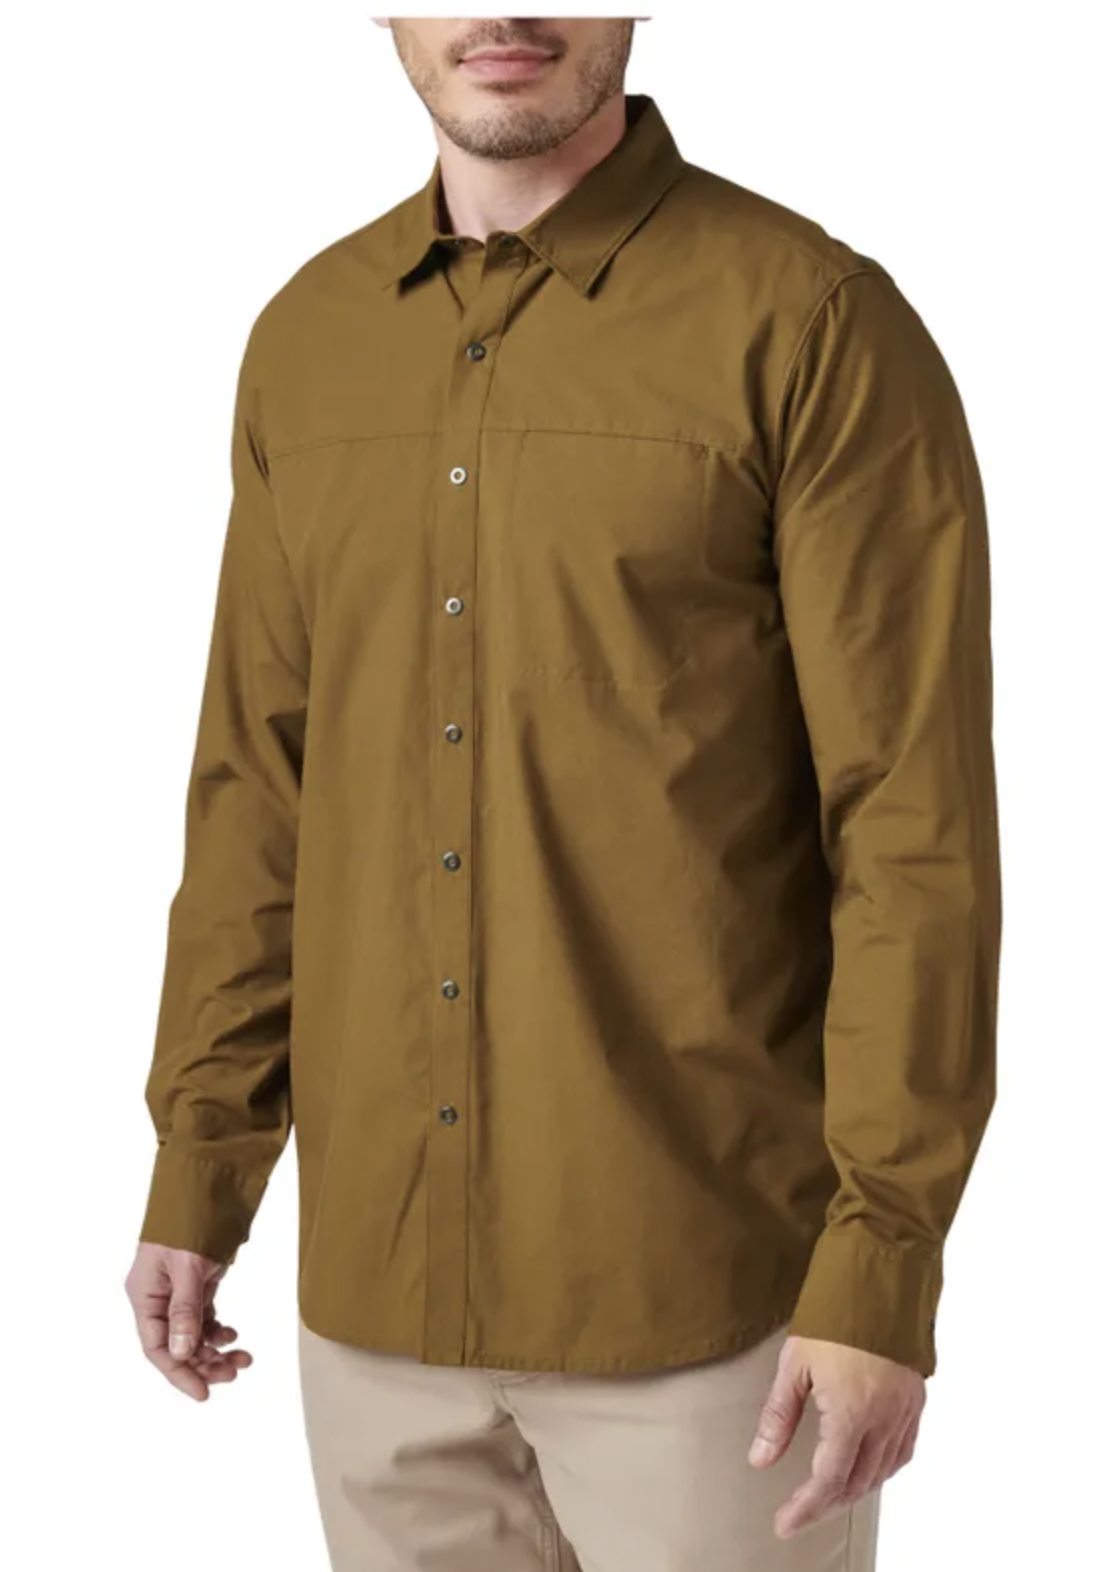 5.11 - Igor Solid Long Sleeve Shirt - Field Green (206)